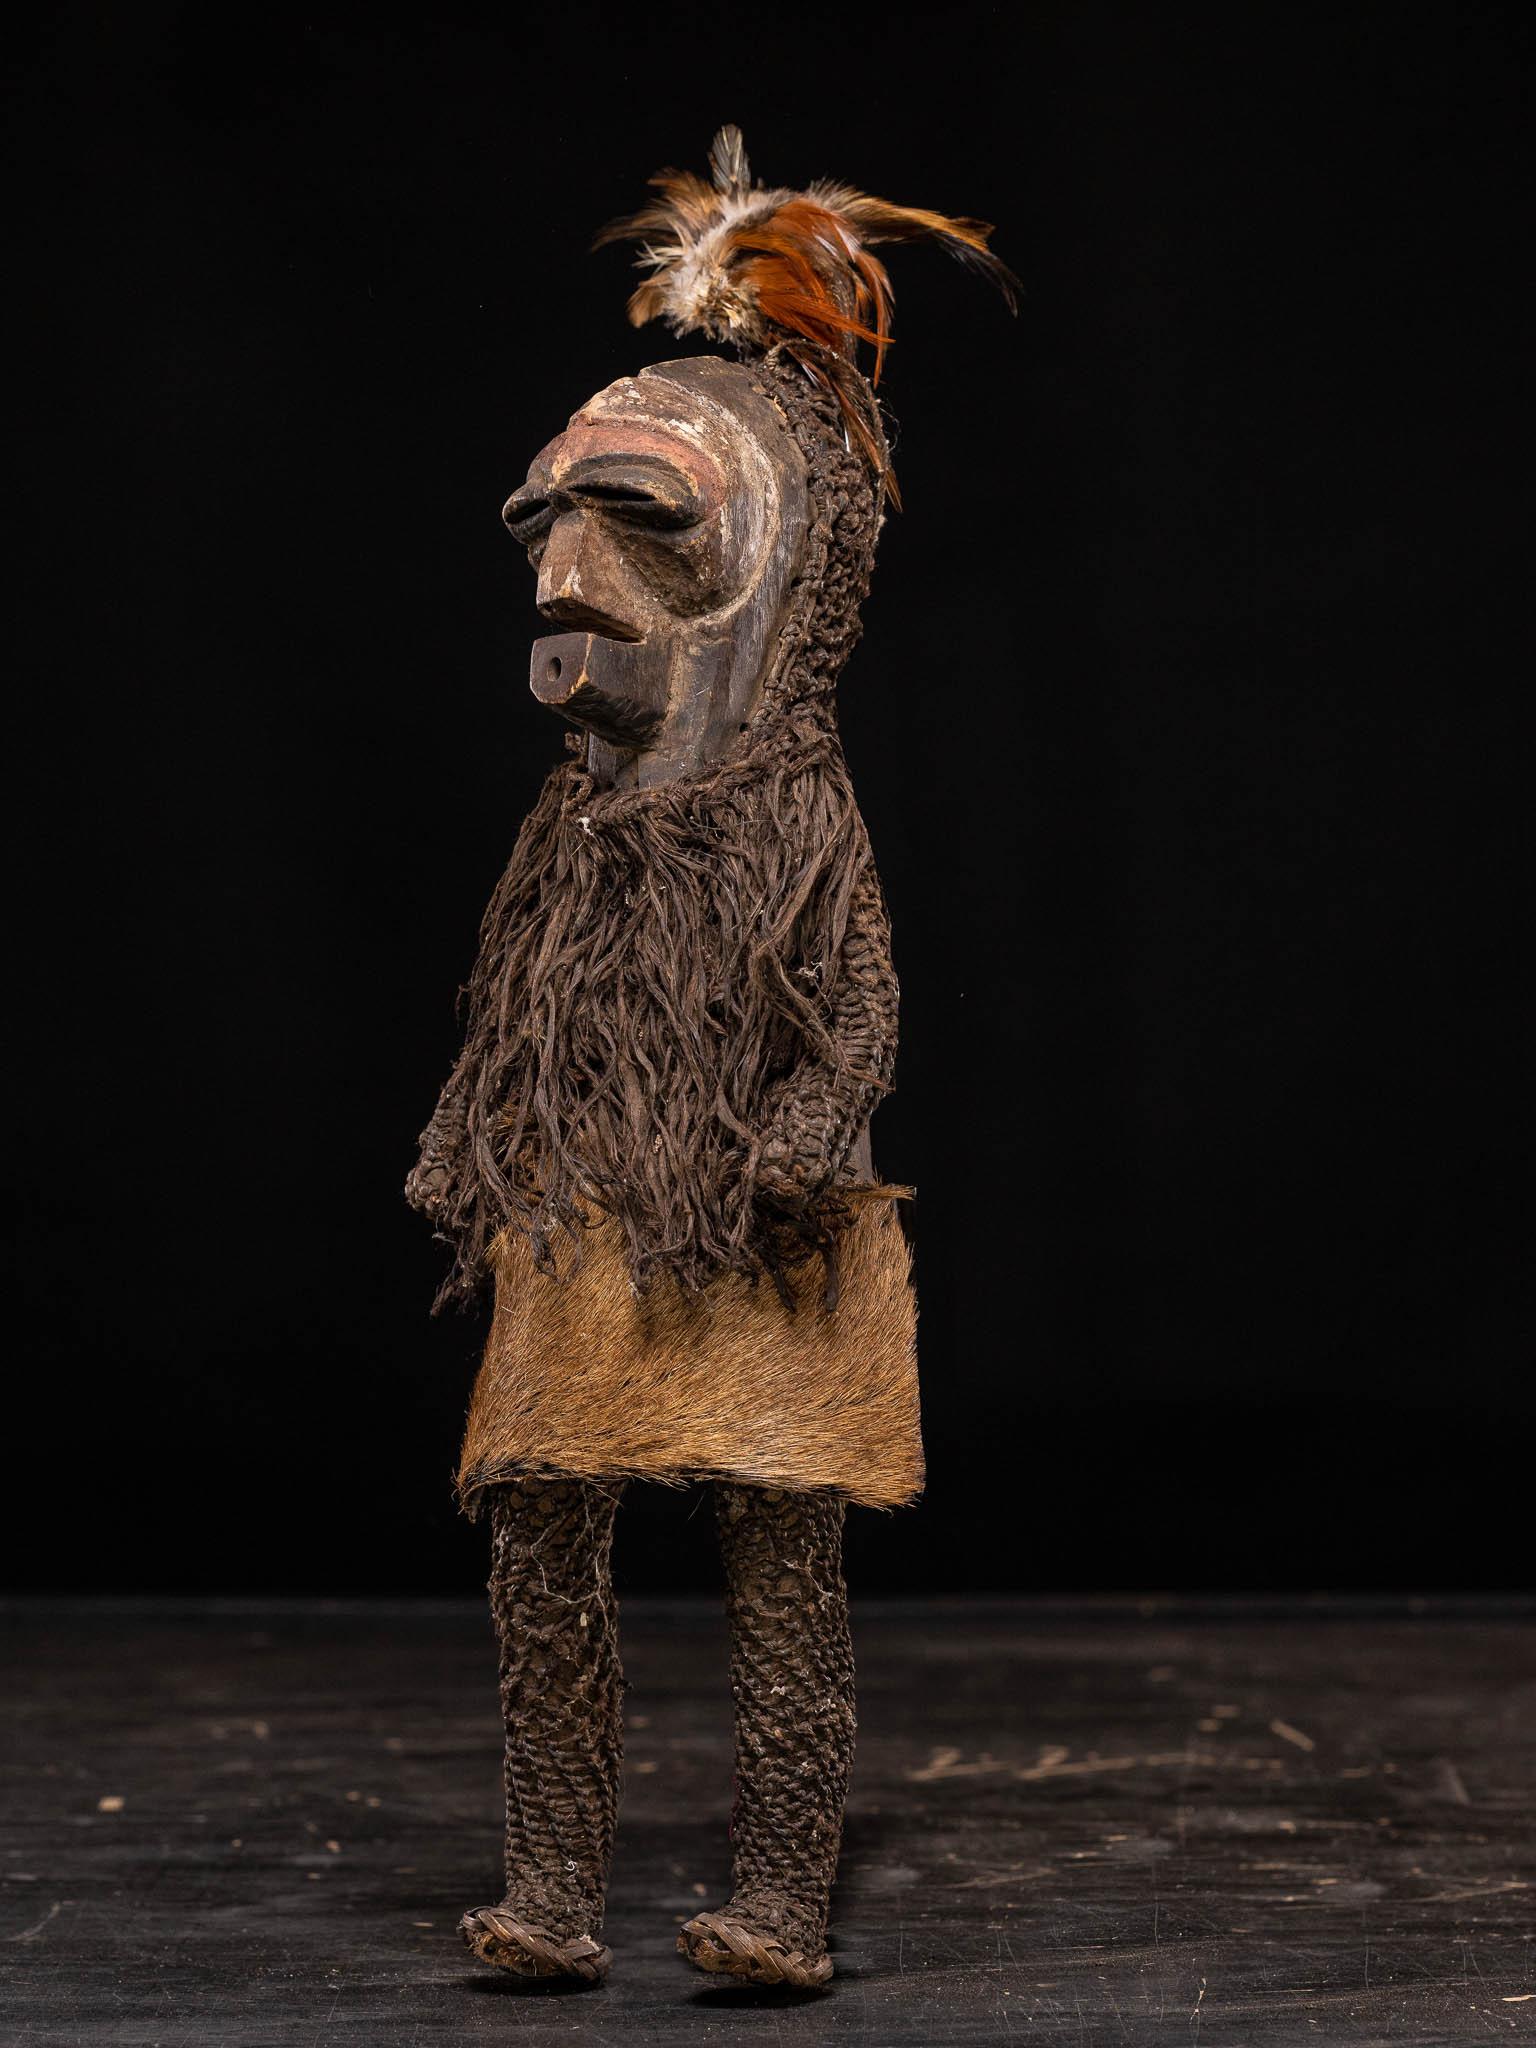 Deux poupées Songye, réductions du costume rituel des danseurs masqués, tête en bois peint et corps recouvert de peau d'animal, de plumes et de fibres tressées.

Collection S S Bruxelles

48 x11 x 14 / 54 x 16,5 x 9 cm